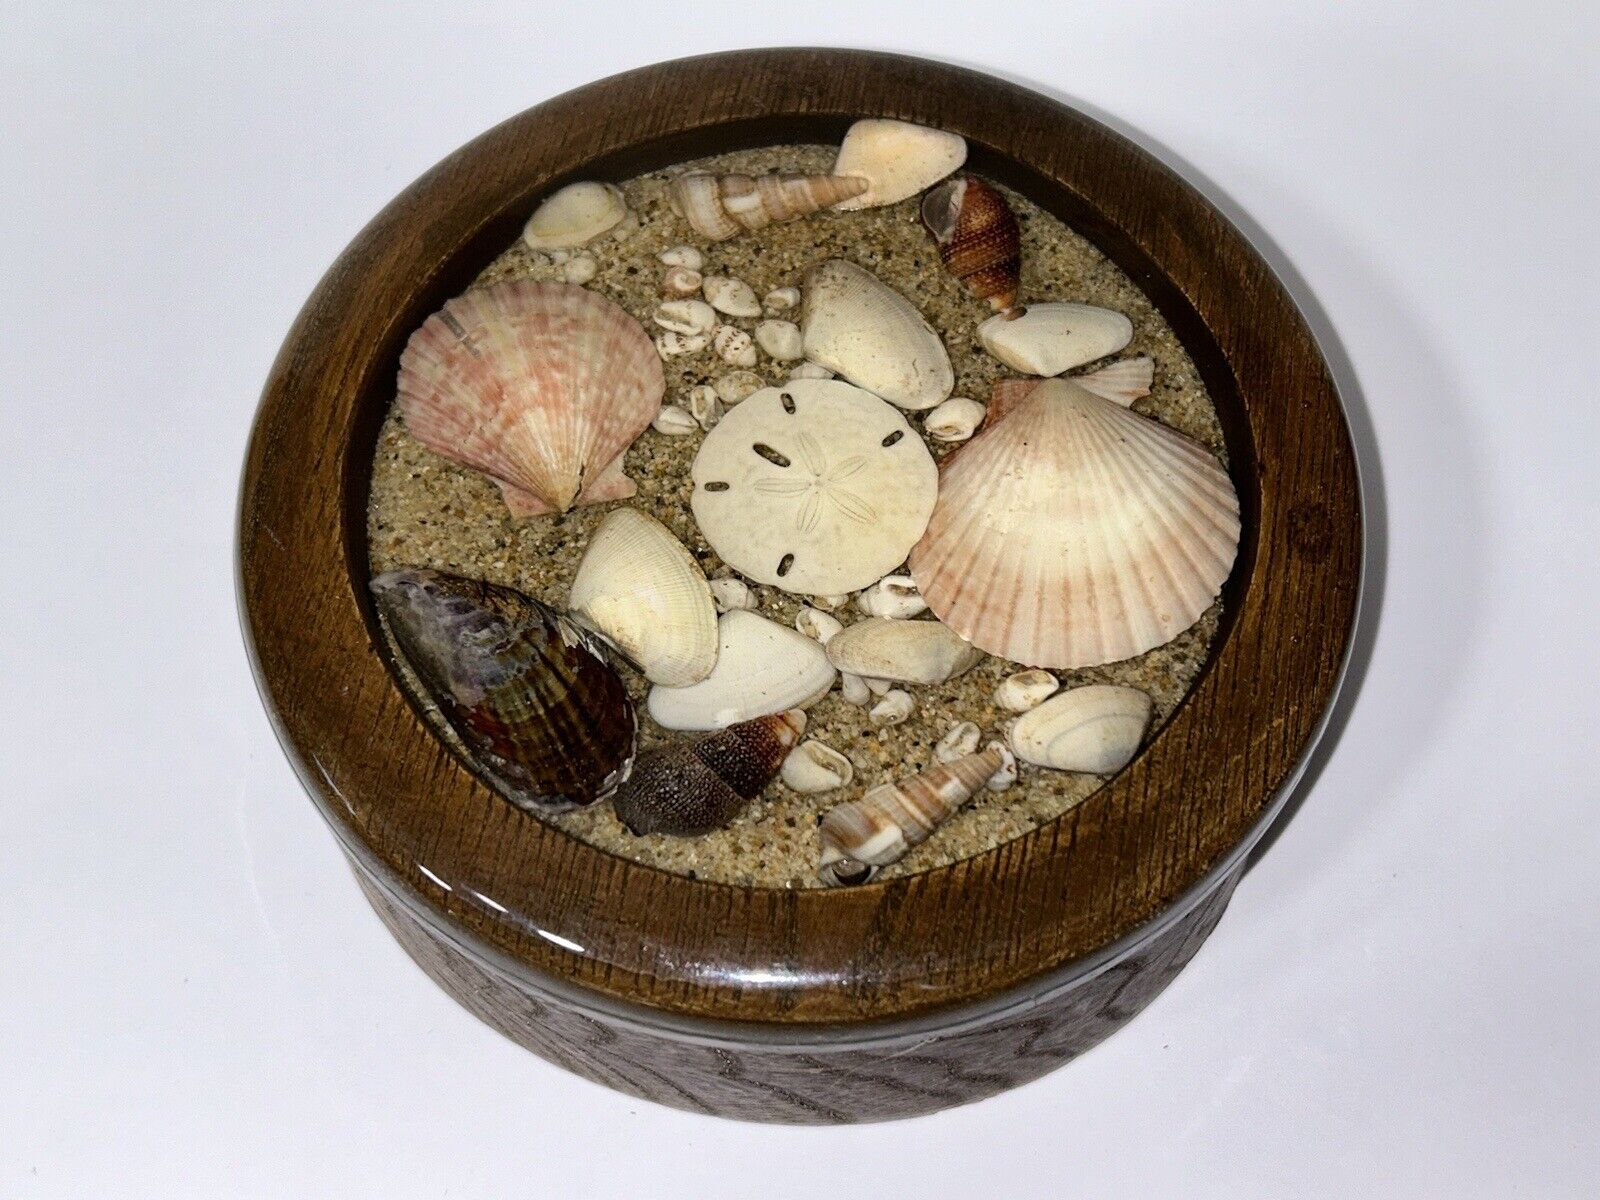 Folk Art Seashells Trinket Box Lidded Wooden Trinket Box w/ Seashells Lid 5.75”